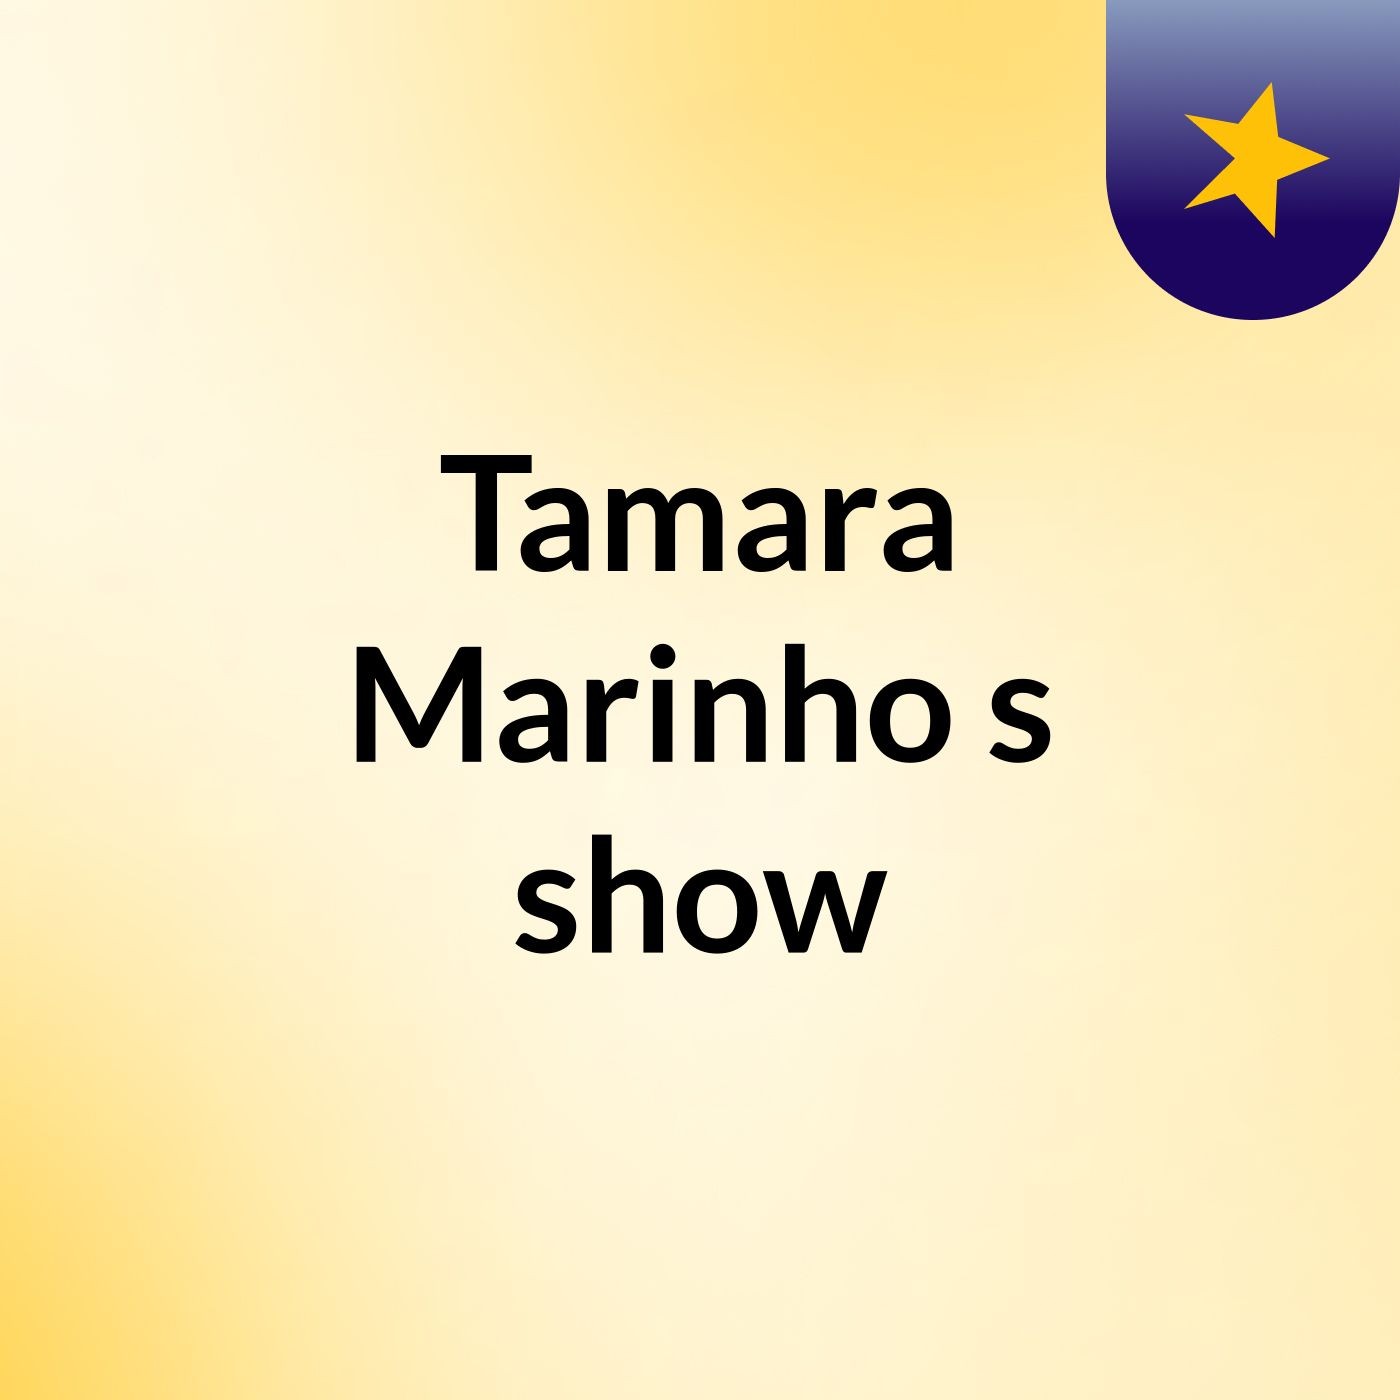 Tamara Marinho's show